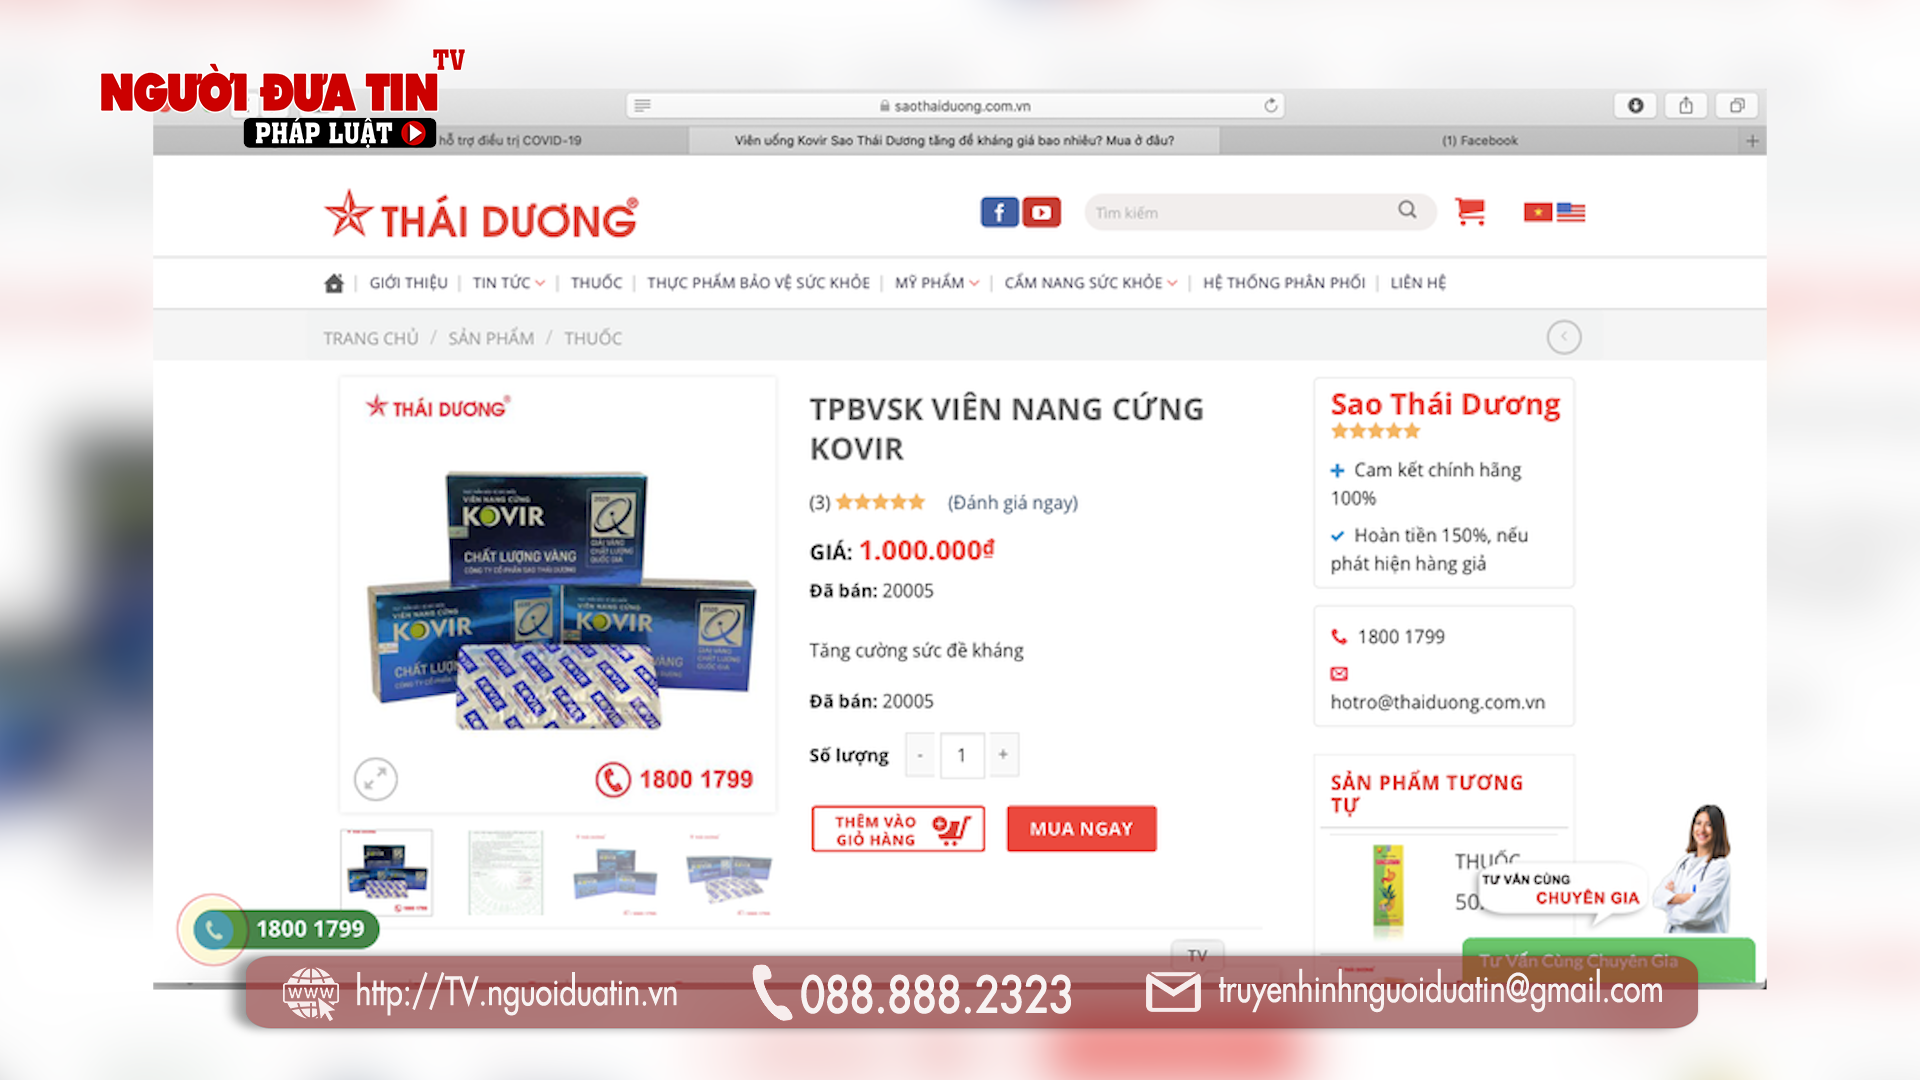 Trên website saothaiduong.com.vn đăng bán sản phẩm viên nang cứng Kovir với giá 1 triệu đồng/ hộp.